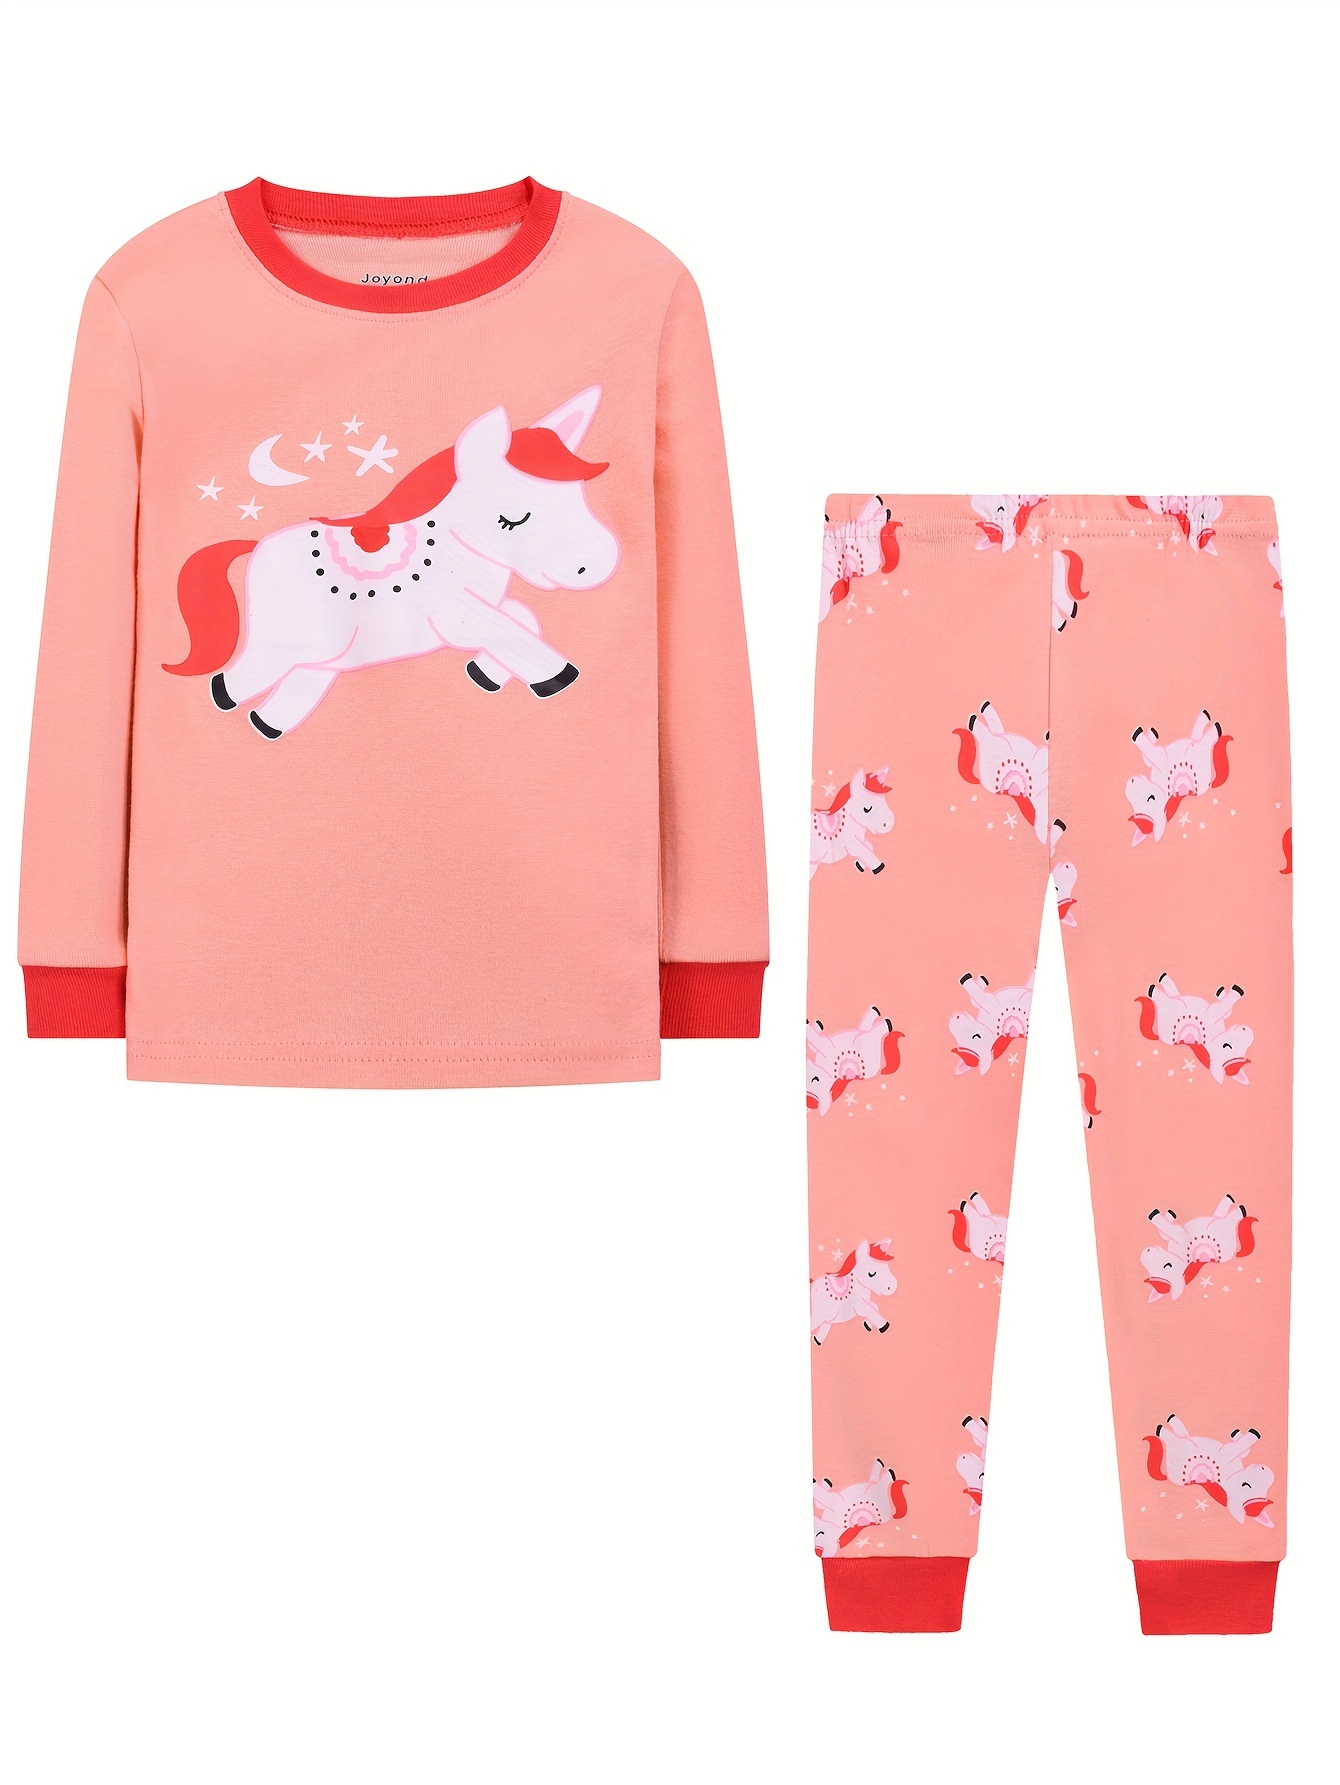 Pigiama unicorno per bambina set pigiama in cotone abiti per